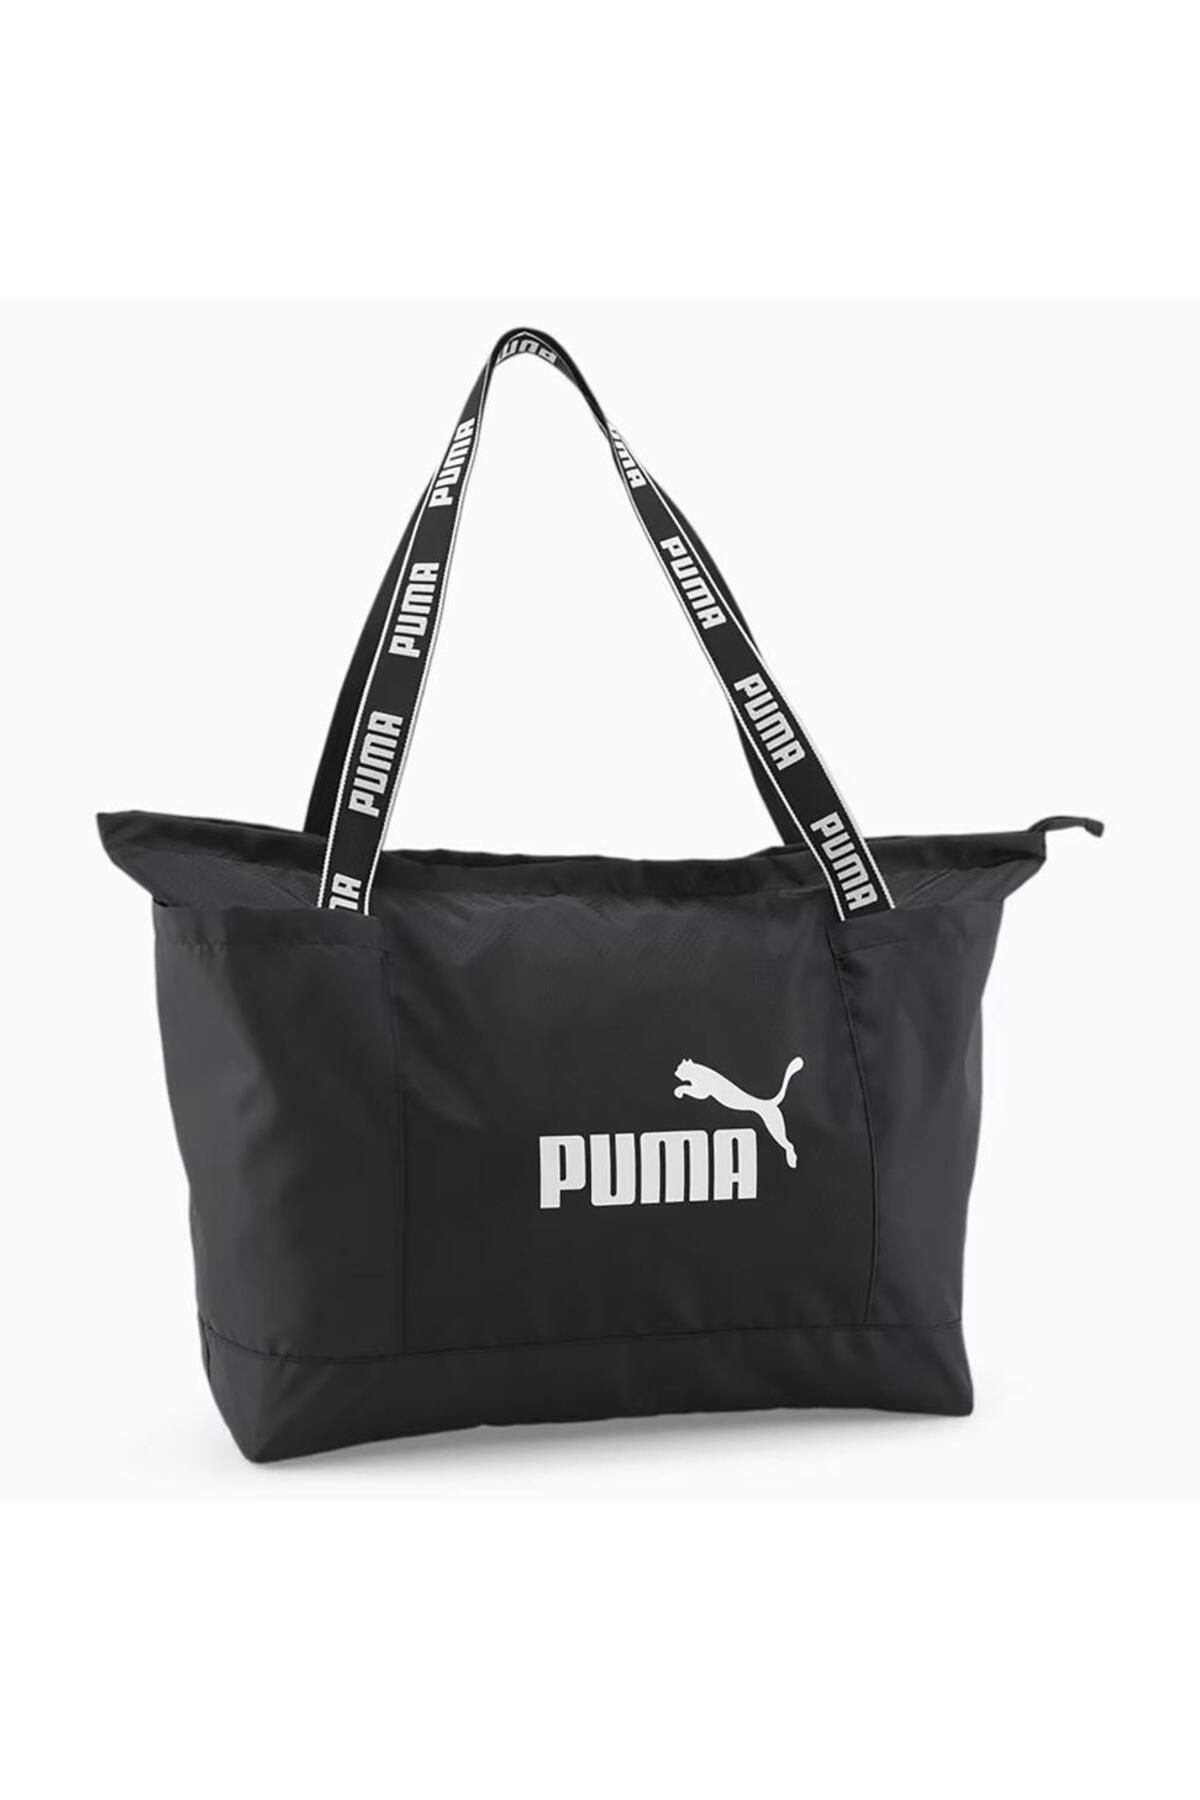 Puma Core Base Kadın Siyah Omuz Çantası (090266-01)